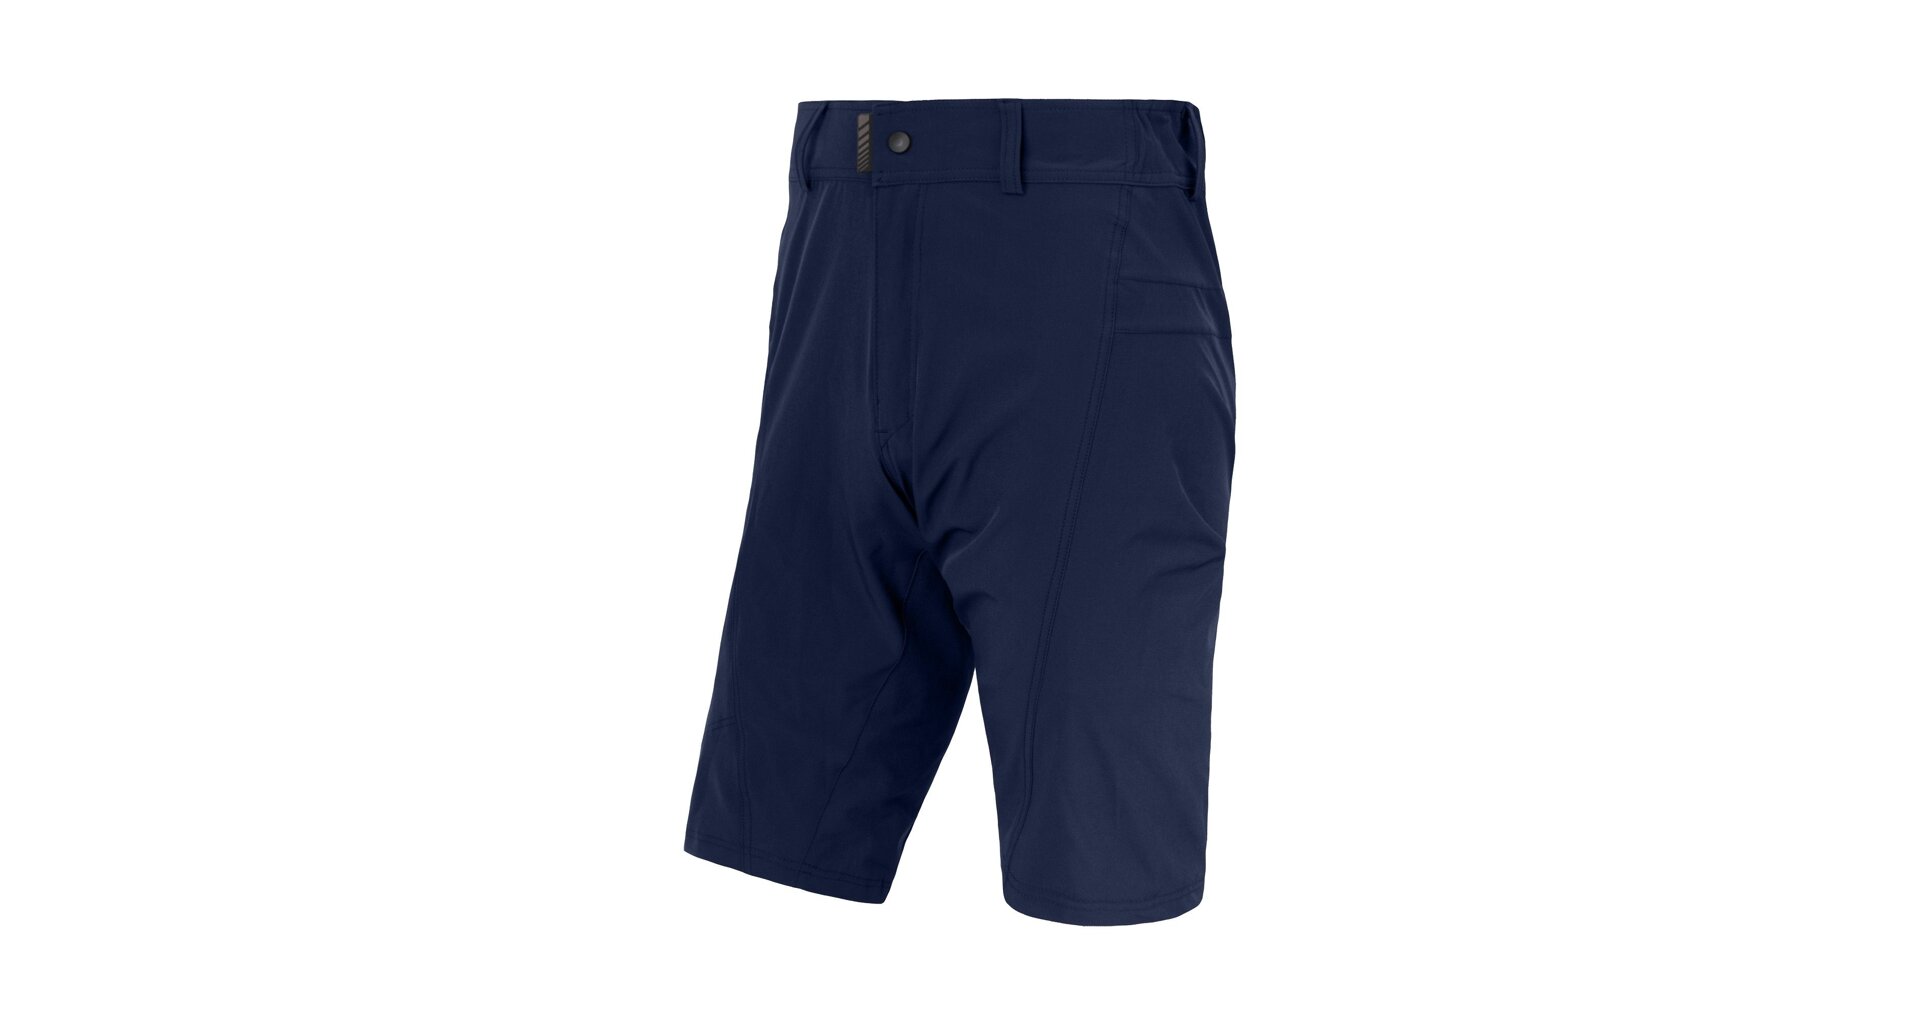 SENSOR HELIUM pánské kalhoty s cyklovložkou krátké volné deep blue Velikost: L